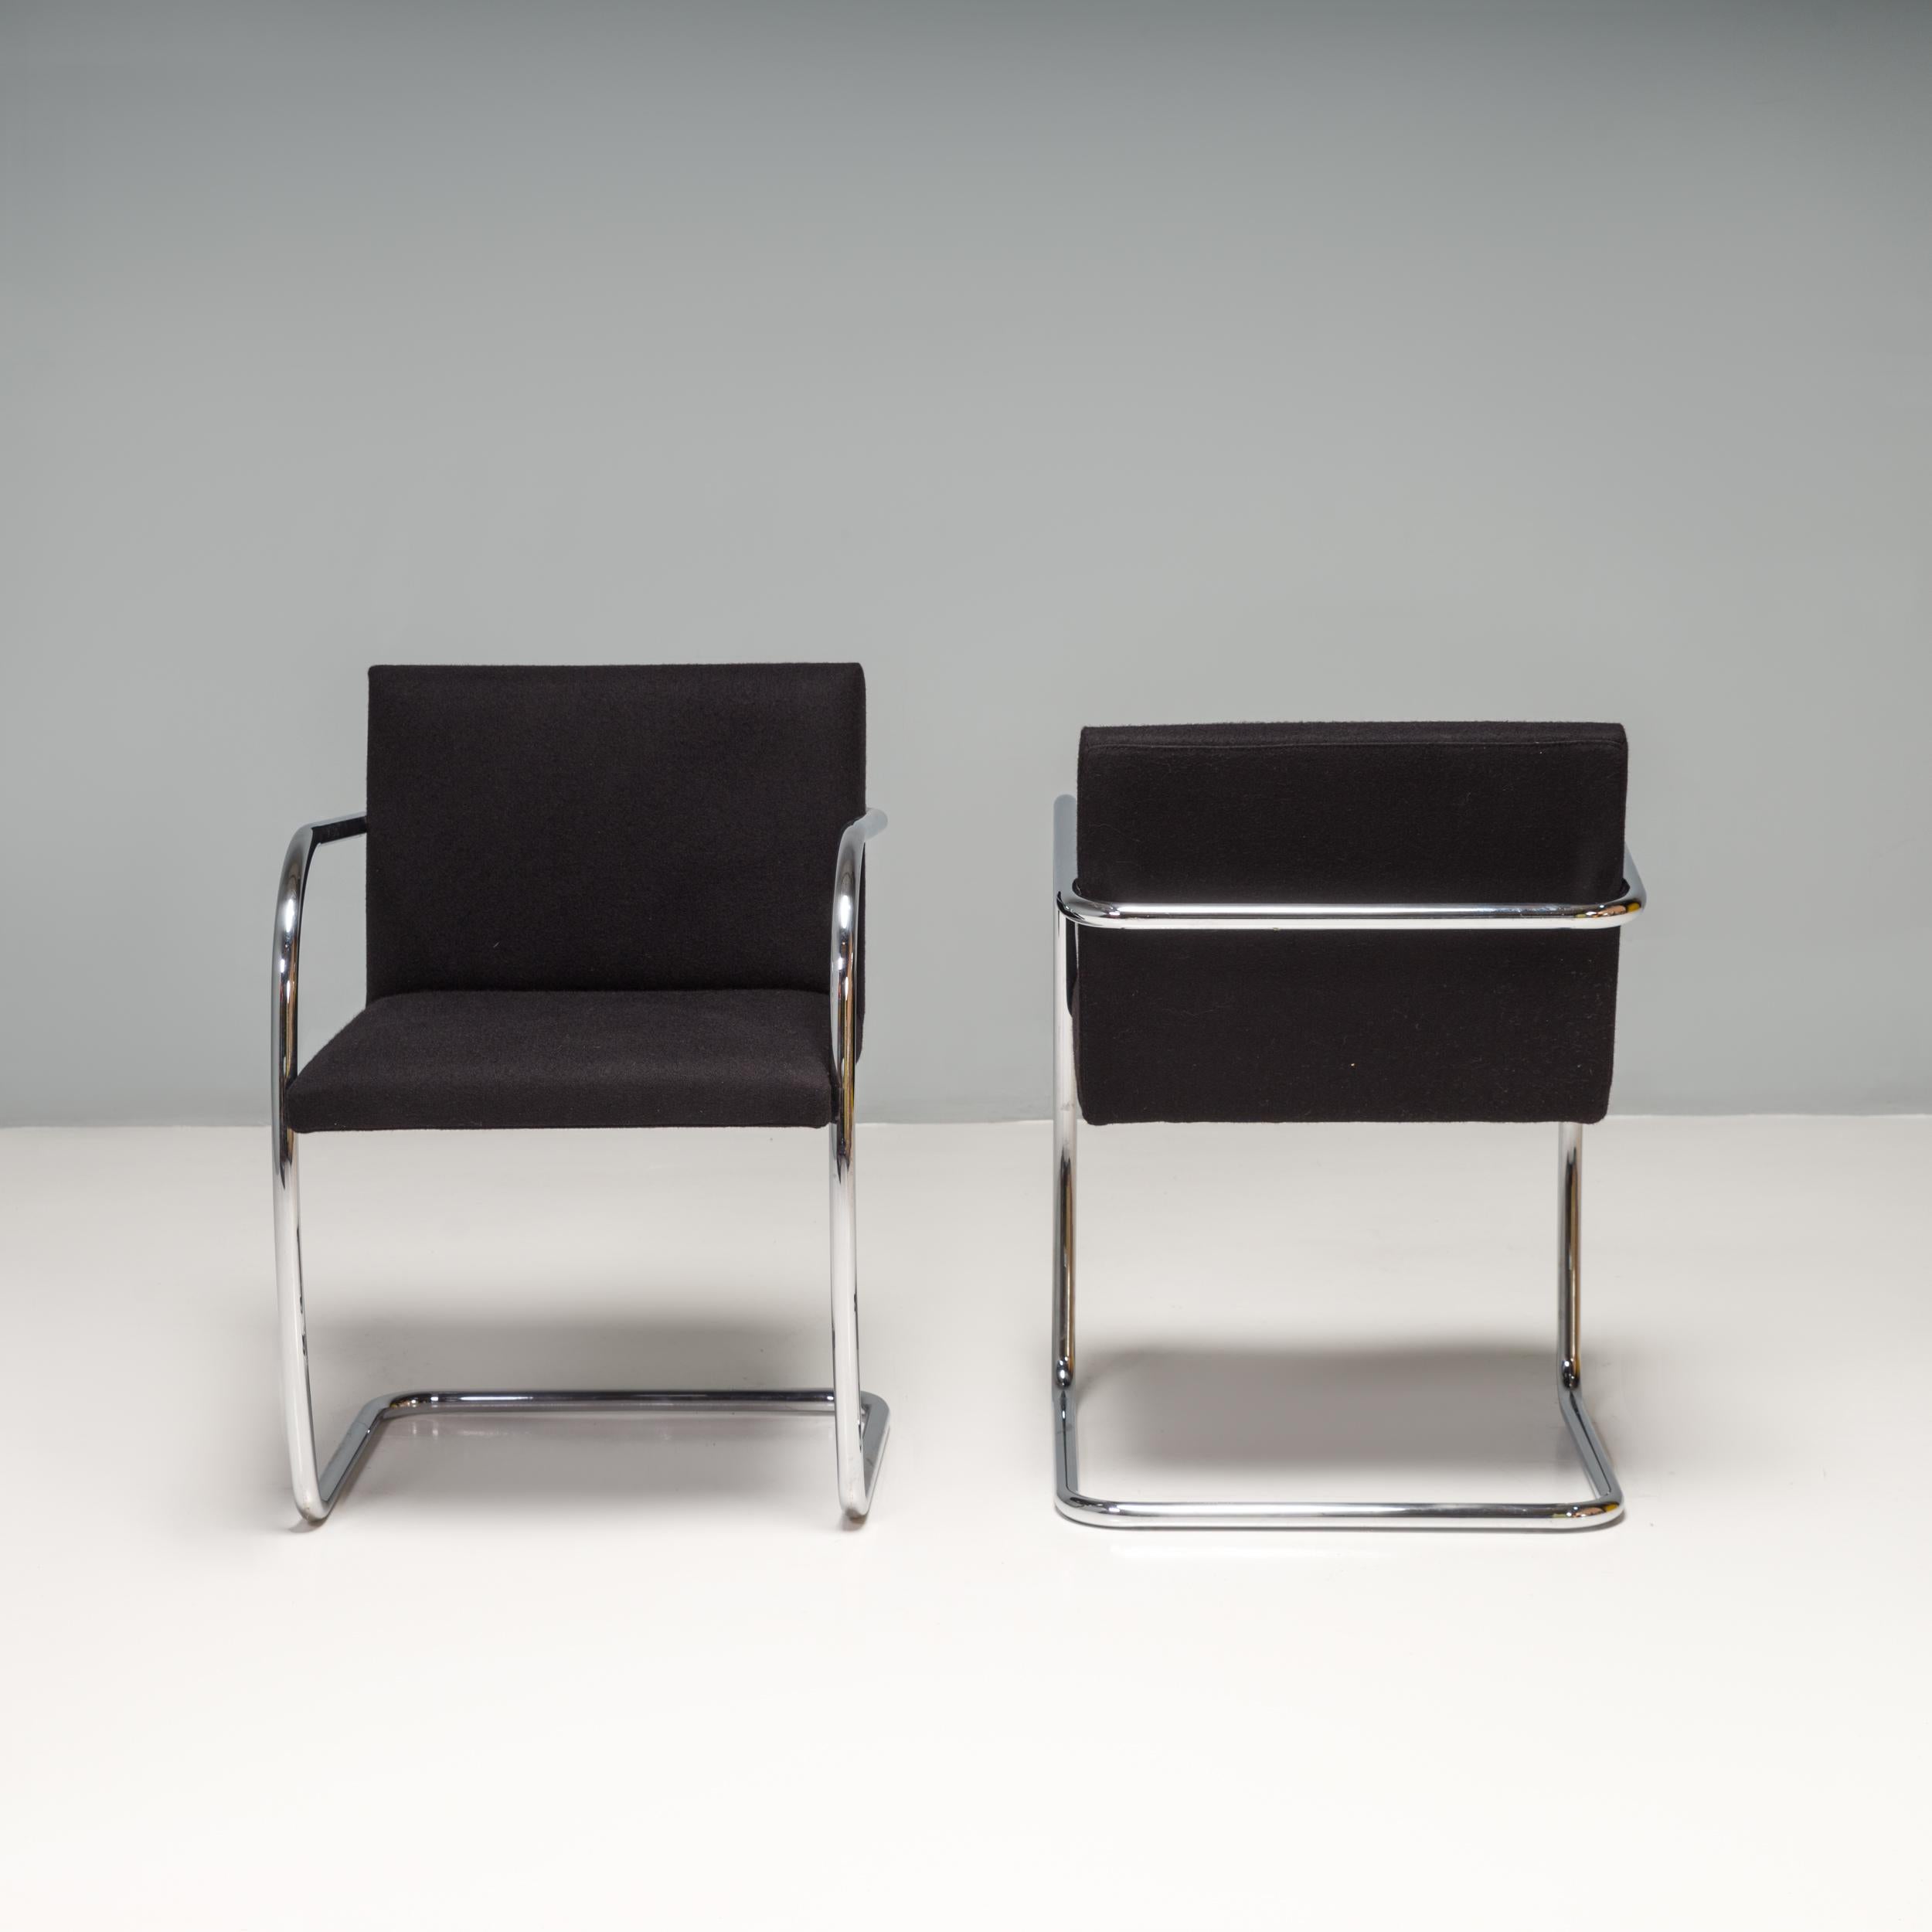 Der 1930 von Mies van der Rohe für sein Haus in Brünn (Tschechische Republik) entworfene Brünner Stuhl ist nach wie vor eine Designikone. 

Die schlichten Freischwinger sind mit schwarzem Stoff bezogen und haben ein verchromtes Rohrgestell mit